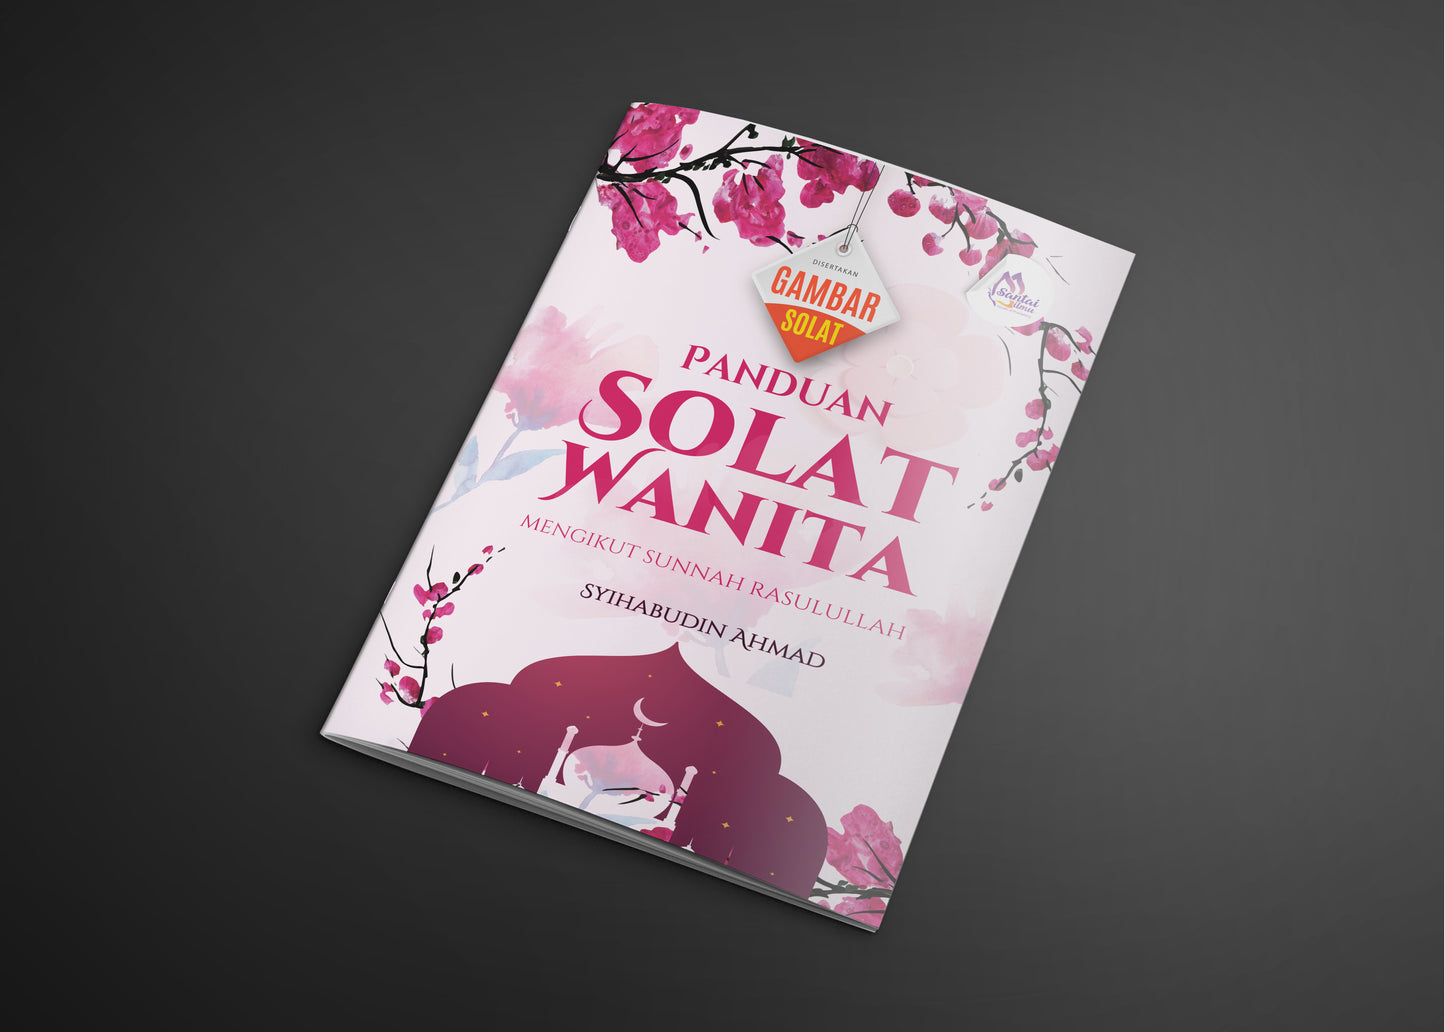 Panduan Solat untuk Wanita mengikut Sunnah Rasulullah Bergambar by Syihabudin Ahmad